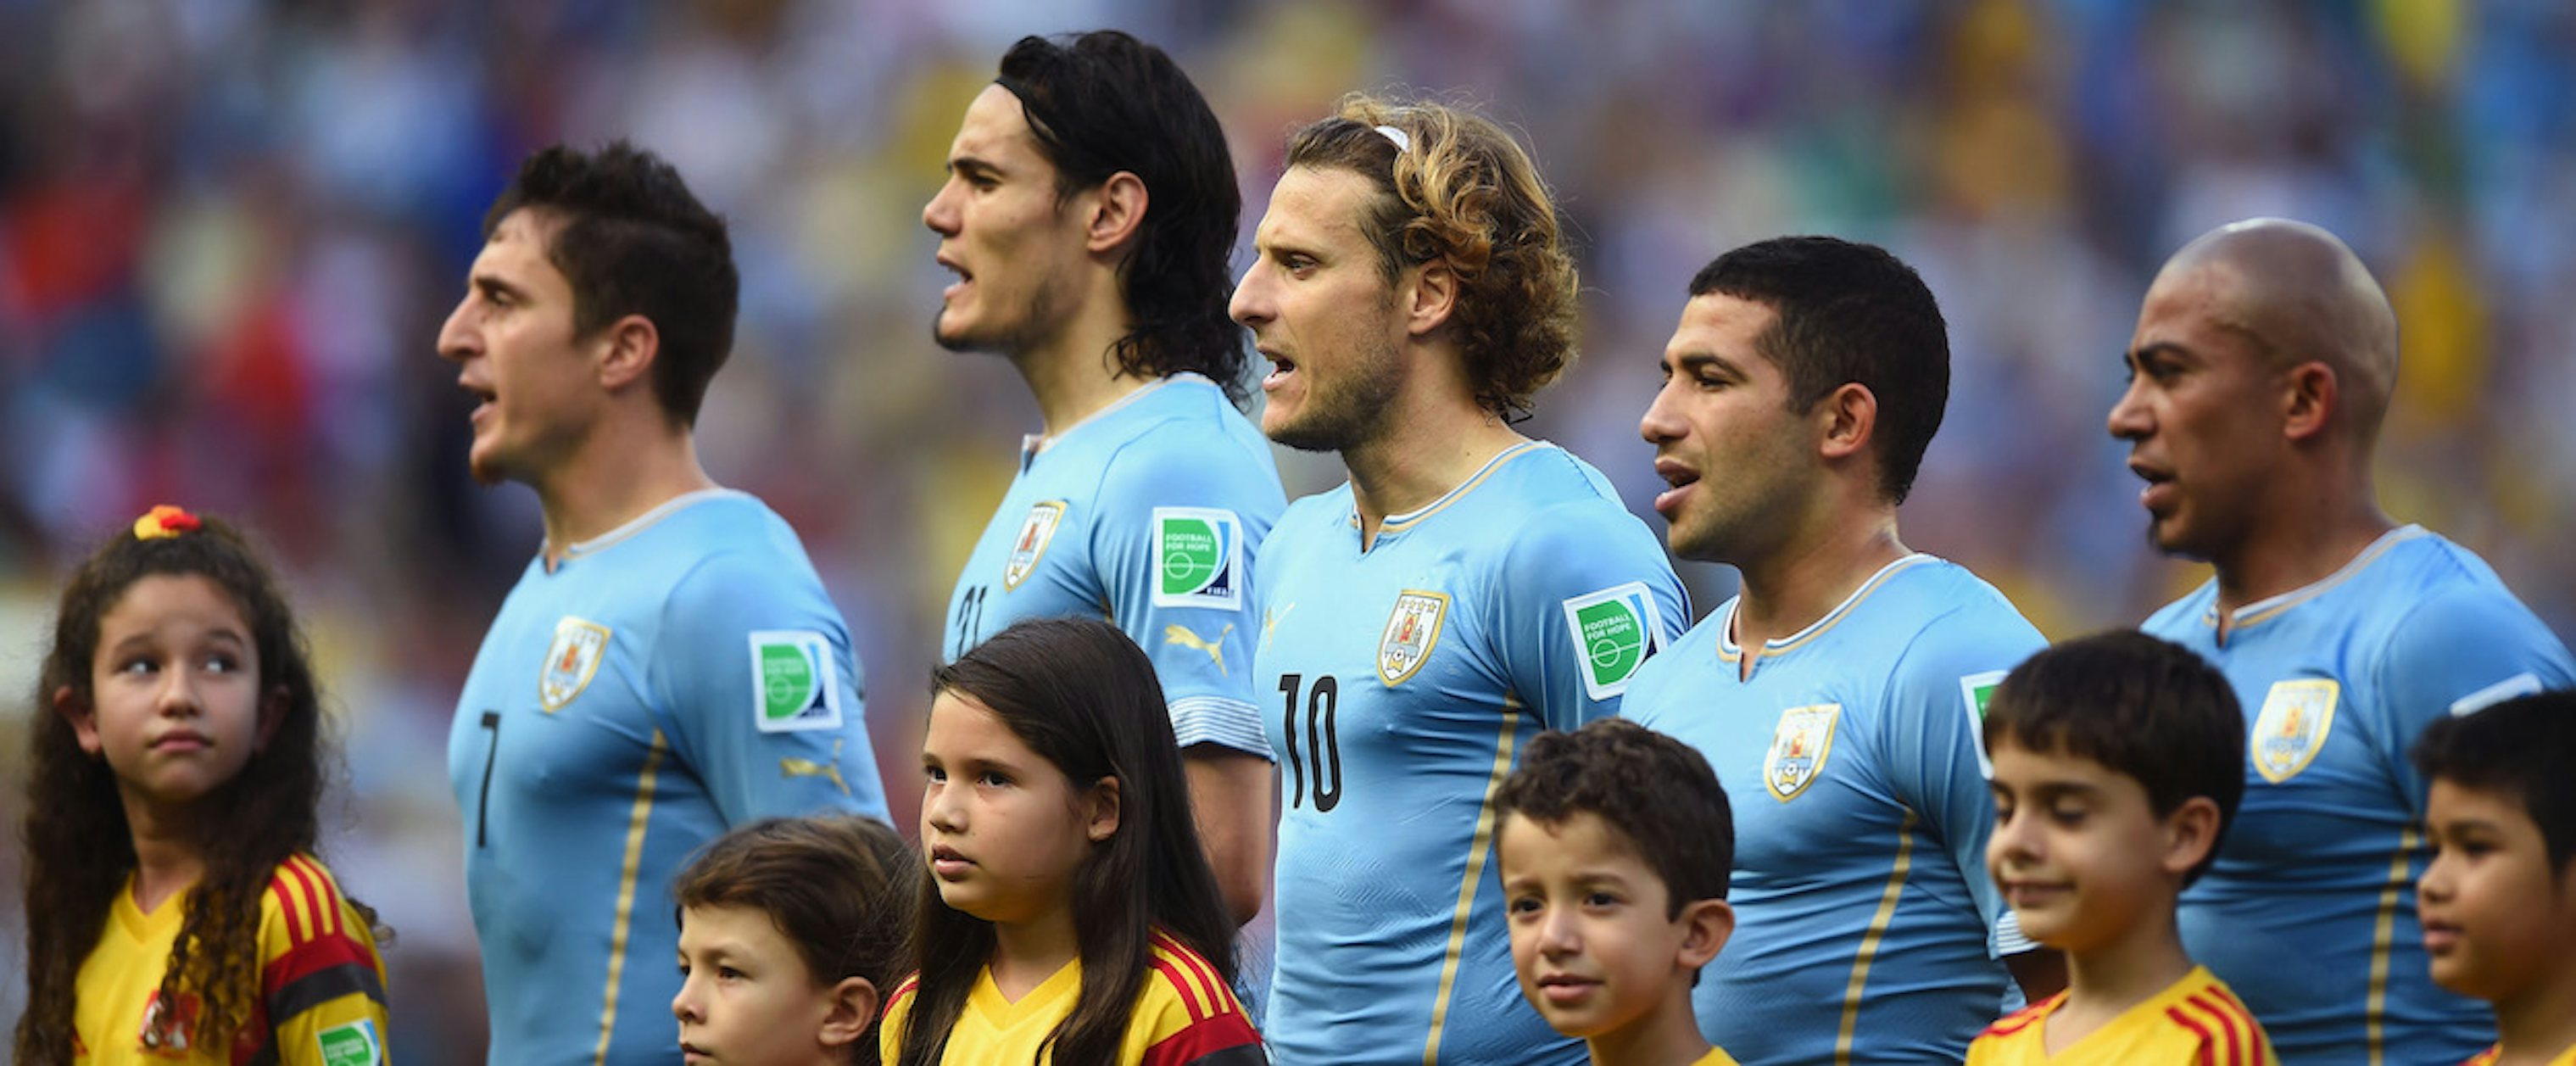 World Cup 2014: Costa Rica vs. Uruguay Reaction | The New Republic